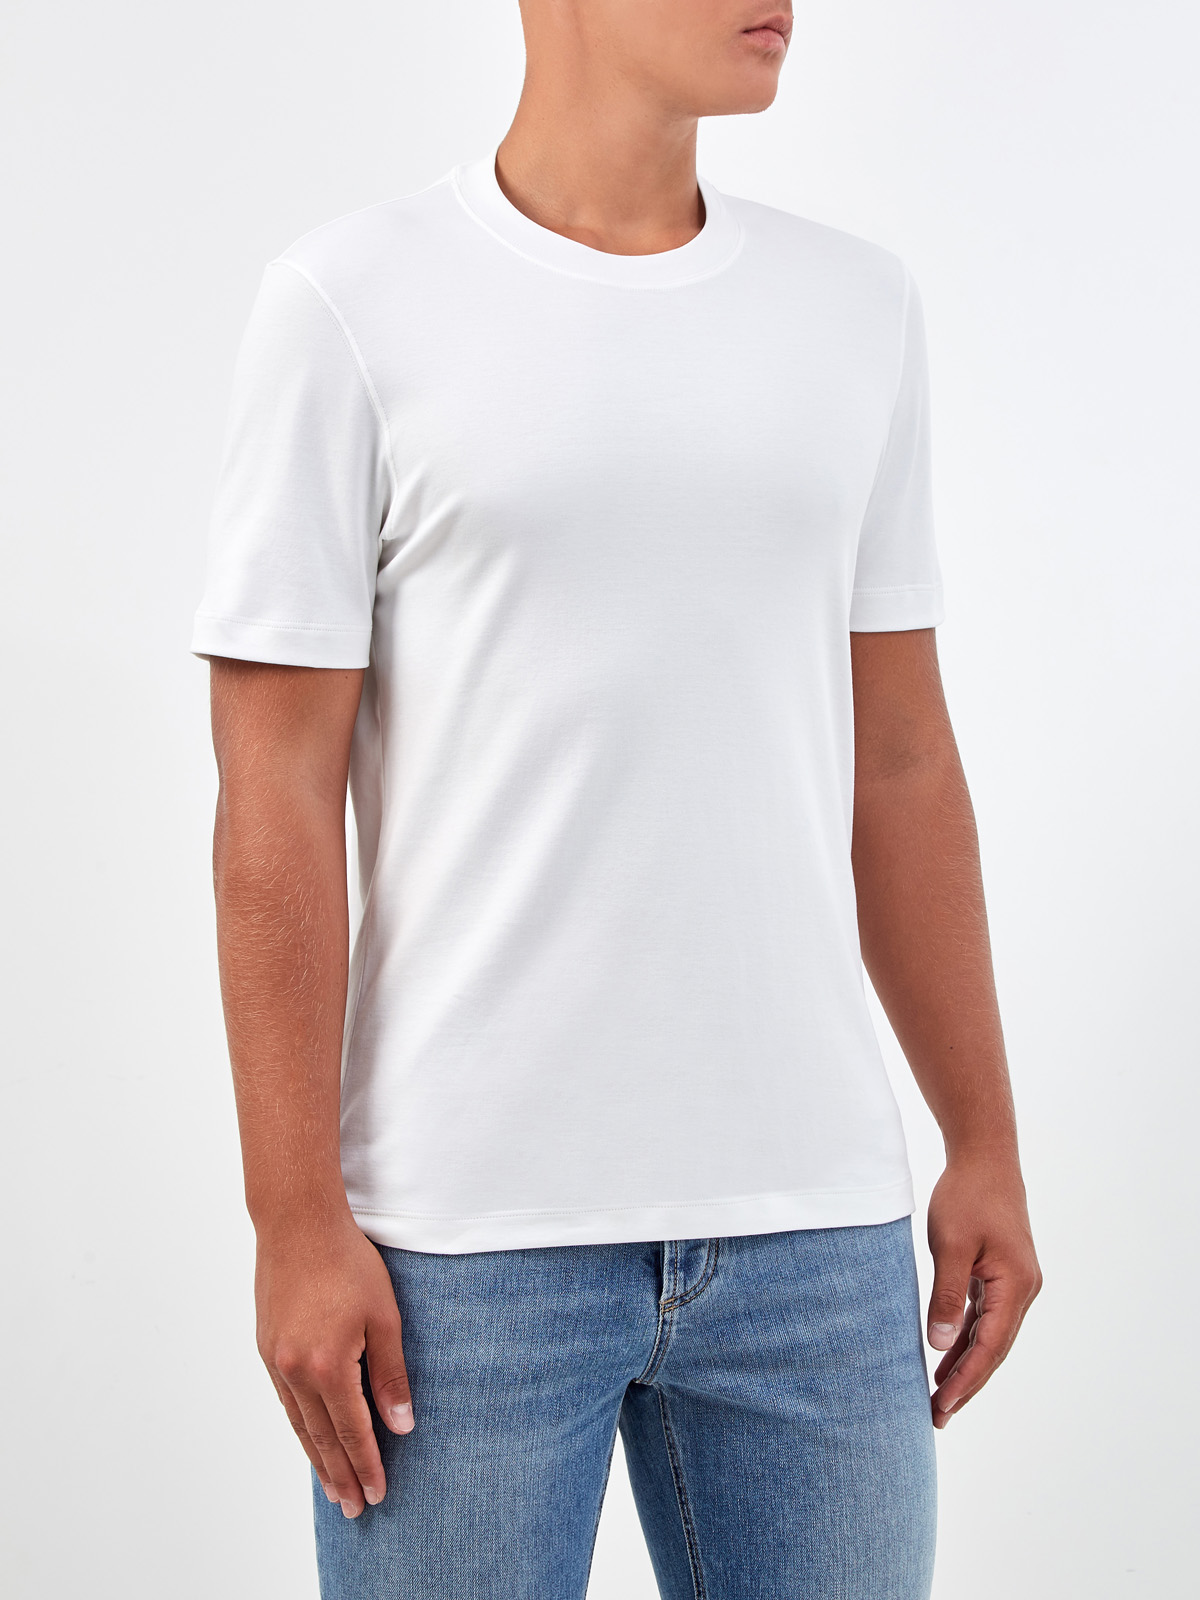 Белая футболка в стиле минимализм из гладкого джерси BRUNELLO CUCINELLI, цвет белый, размер 46;52;54;48 - фото 3